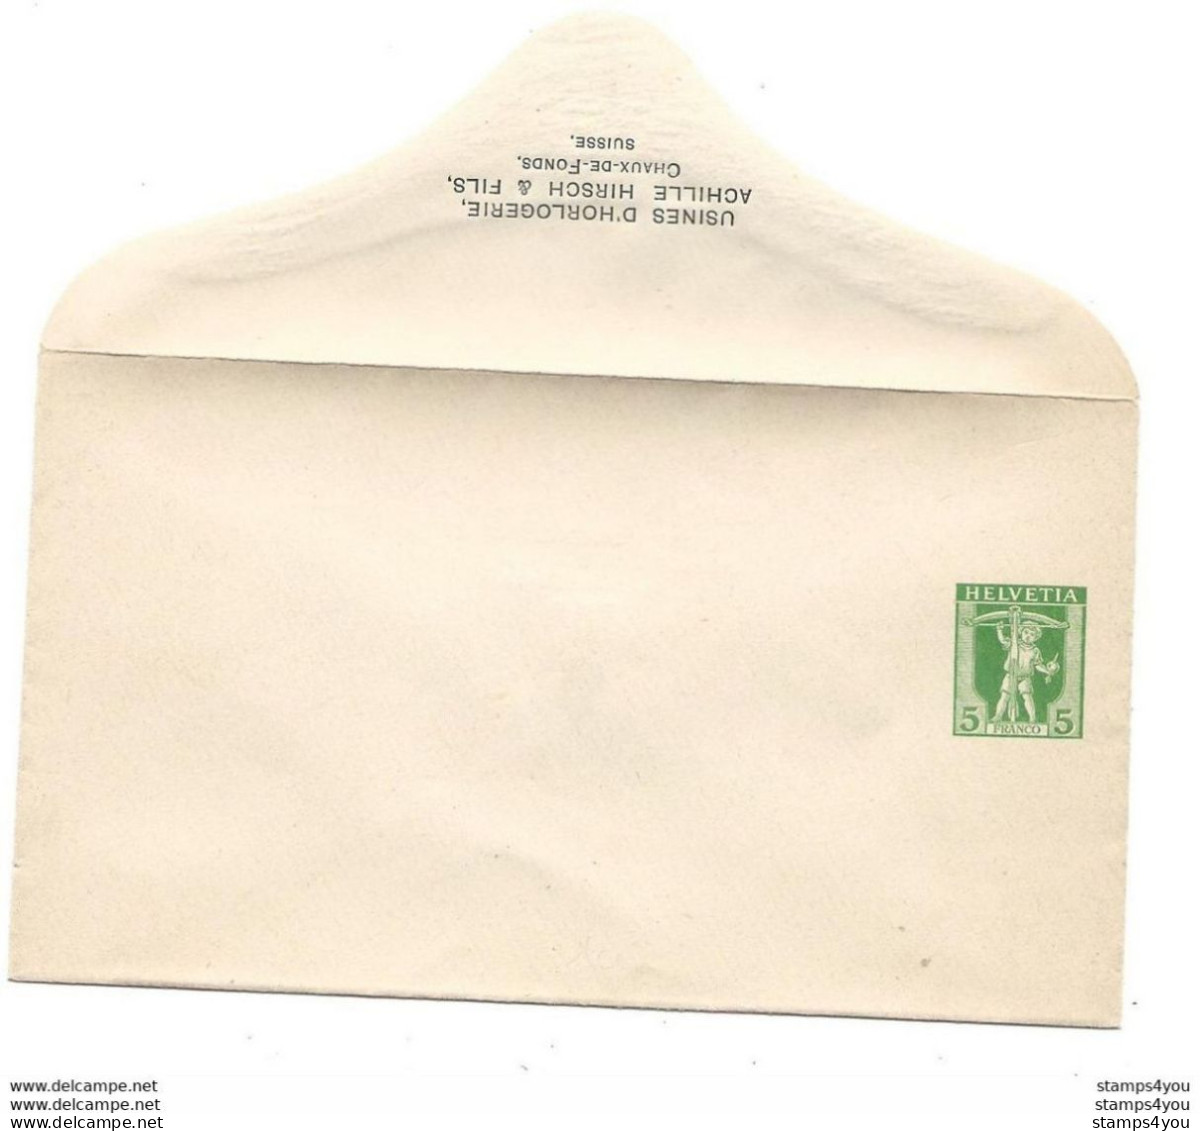 19 - 74 - Entier Postal Privé  Neuf "Usines D'horlogerie Achille Hirsch Chaux-.de-Fonds" - Ganzsachen